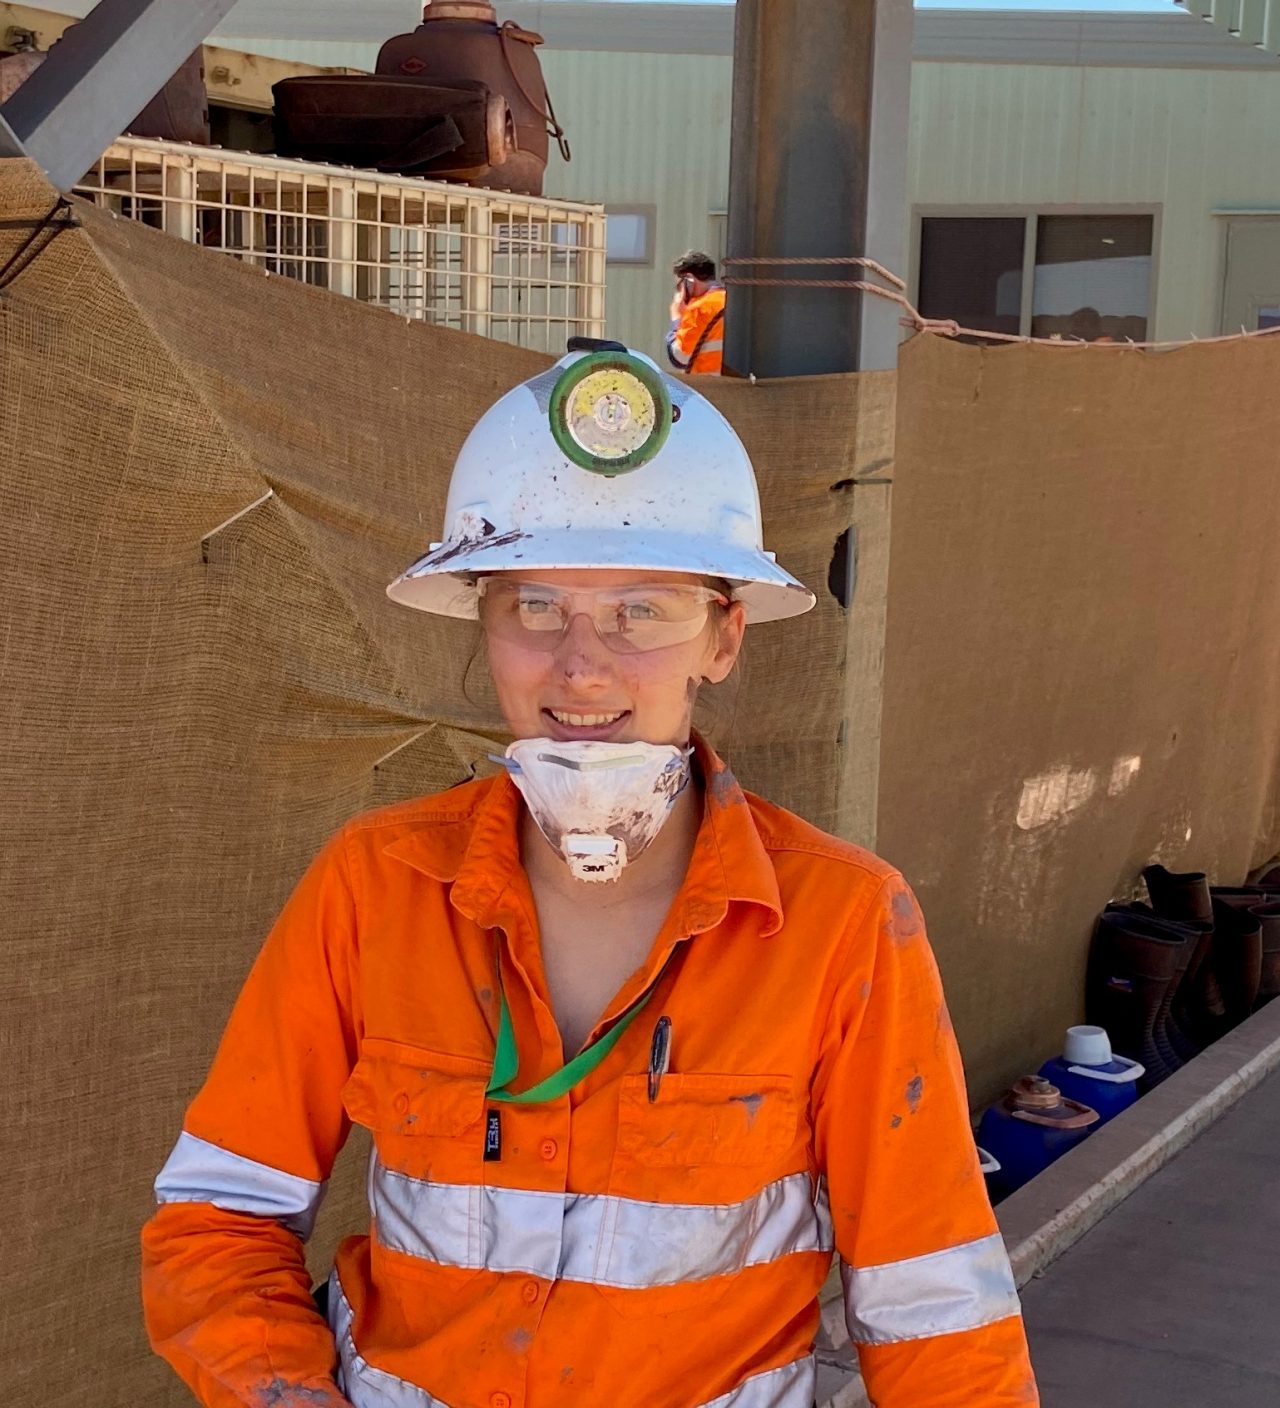 Tara in mining PPE and workwear